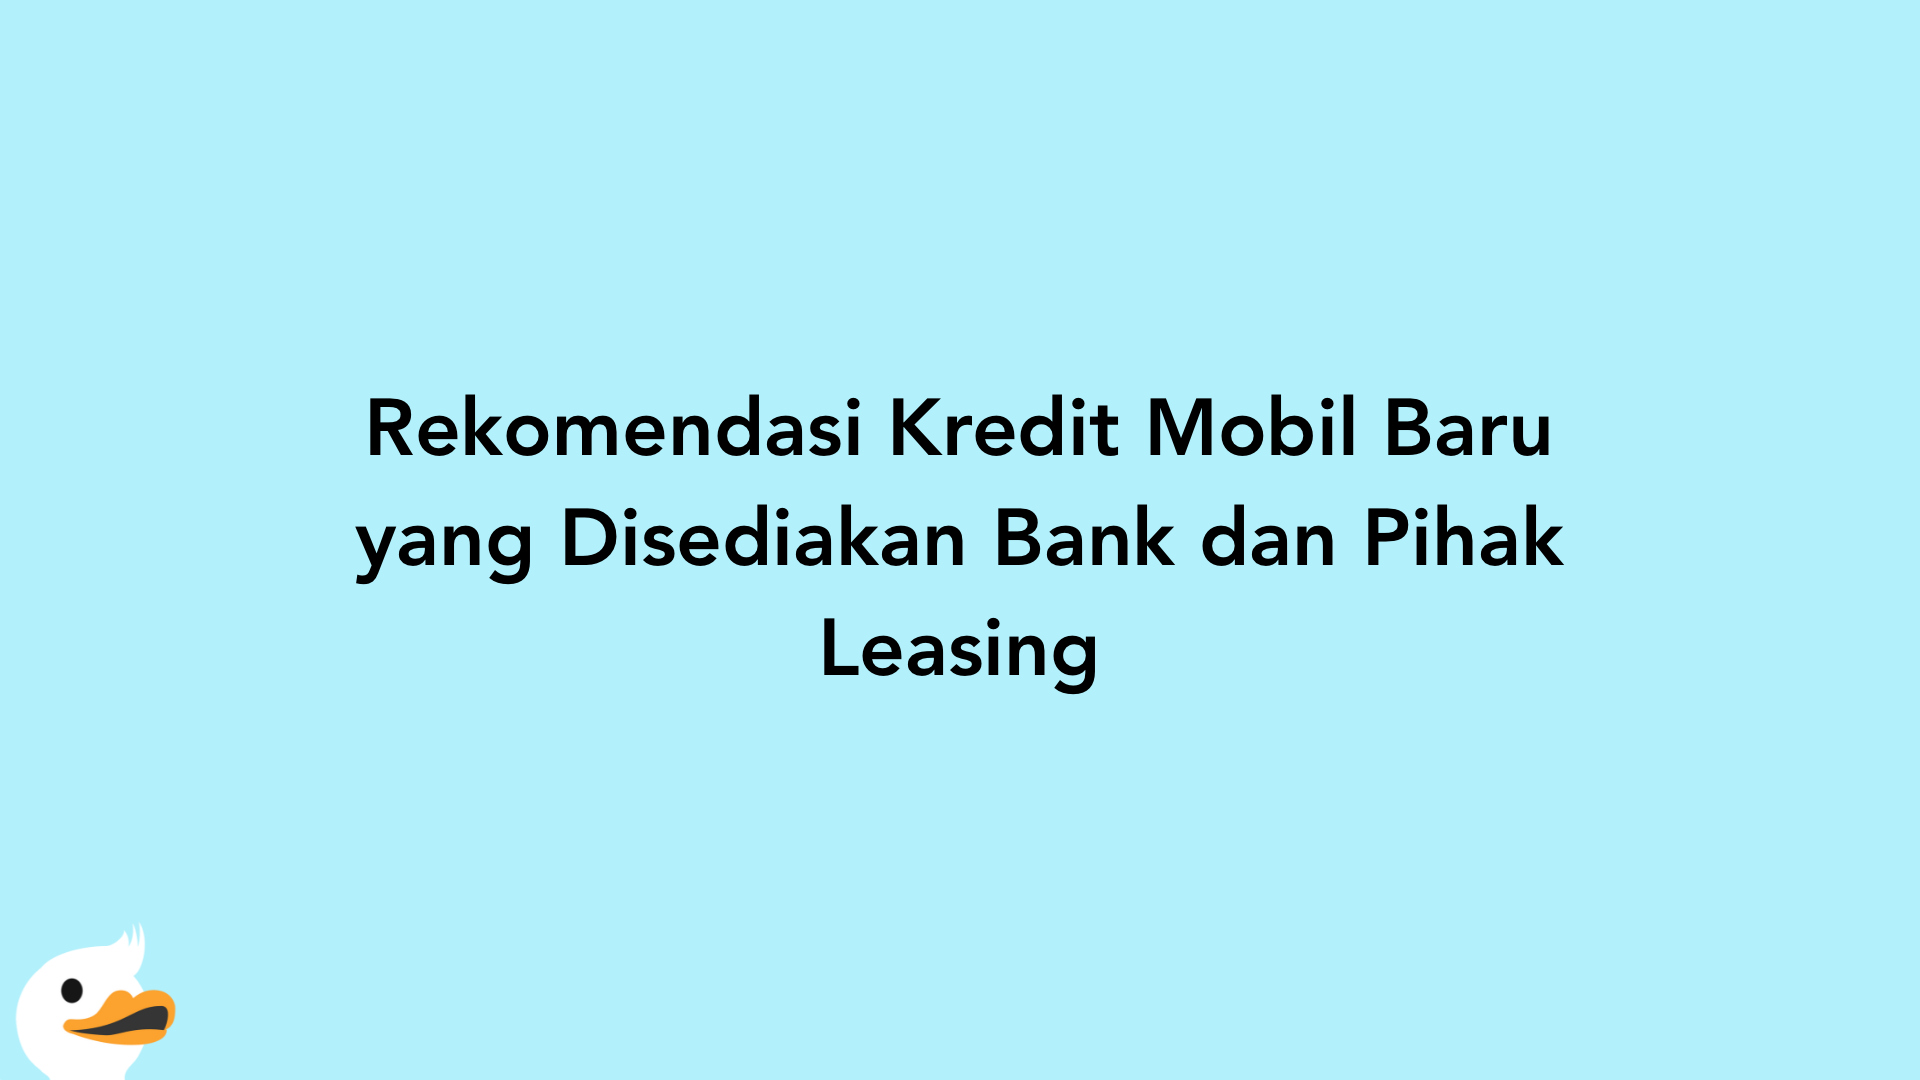 Rekomendasi Kredit Mobil Baru yang Disediakan Bank dan Pihak Leasing